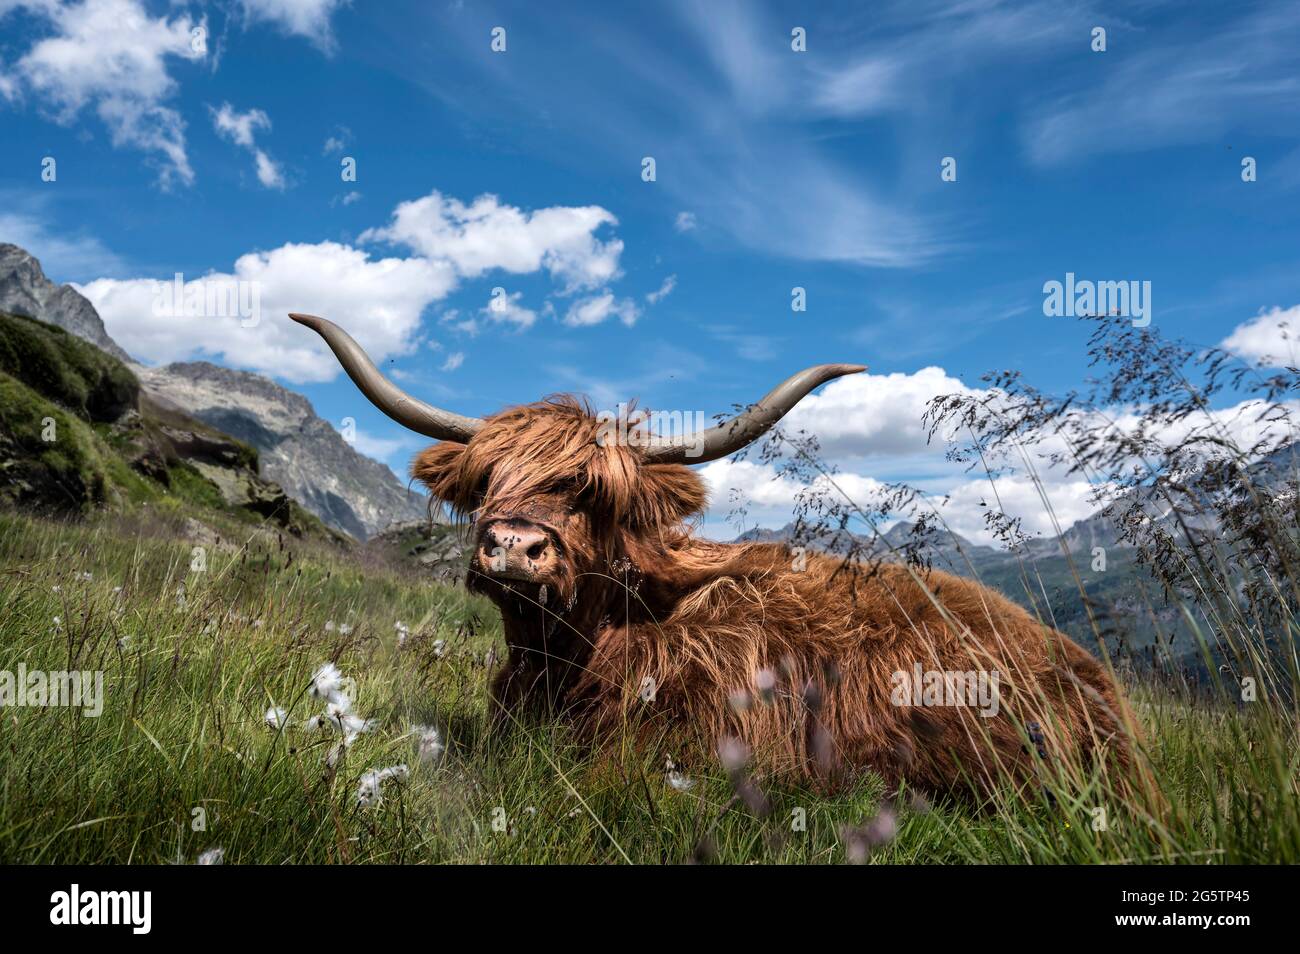 Schottisches Hochlandrind (Highland cattle) bei Blaunca über dem Silsersee in  der Gem. Sils im Engadin/Segl, am 20.07.19. Stock Photo